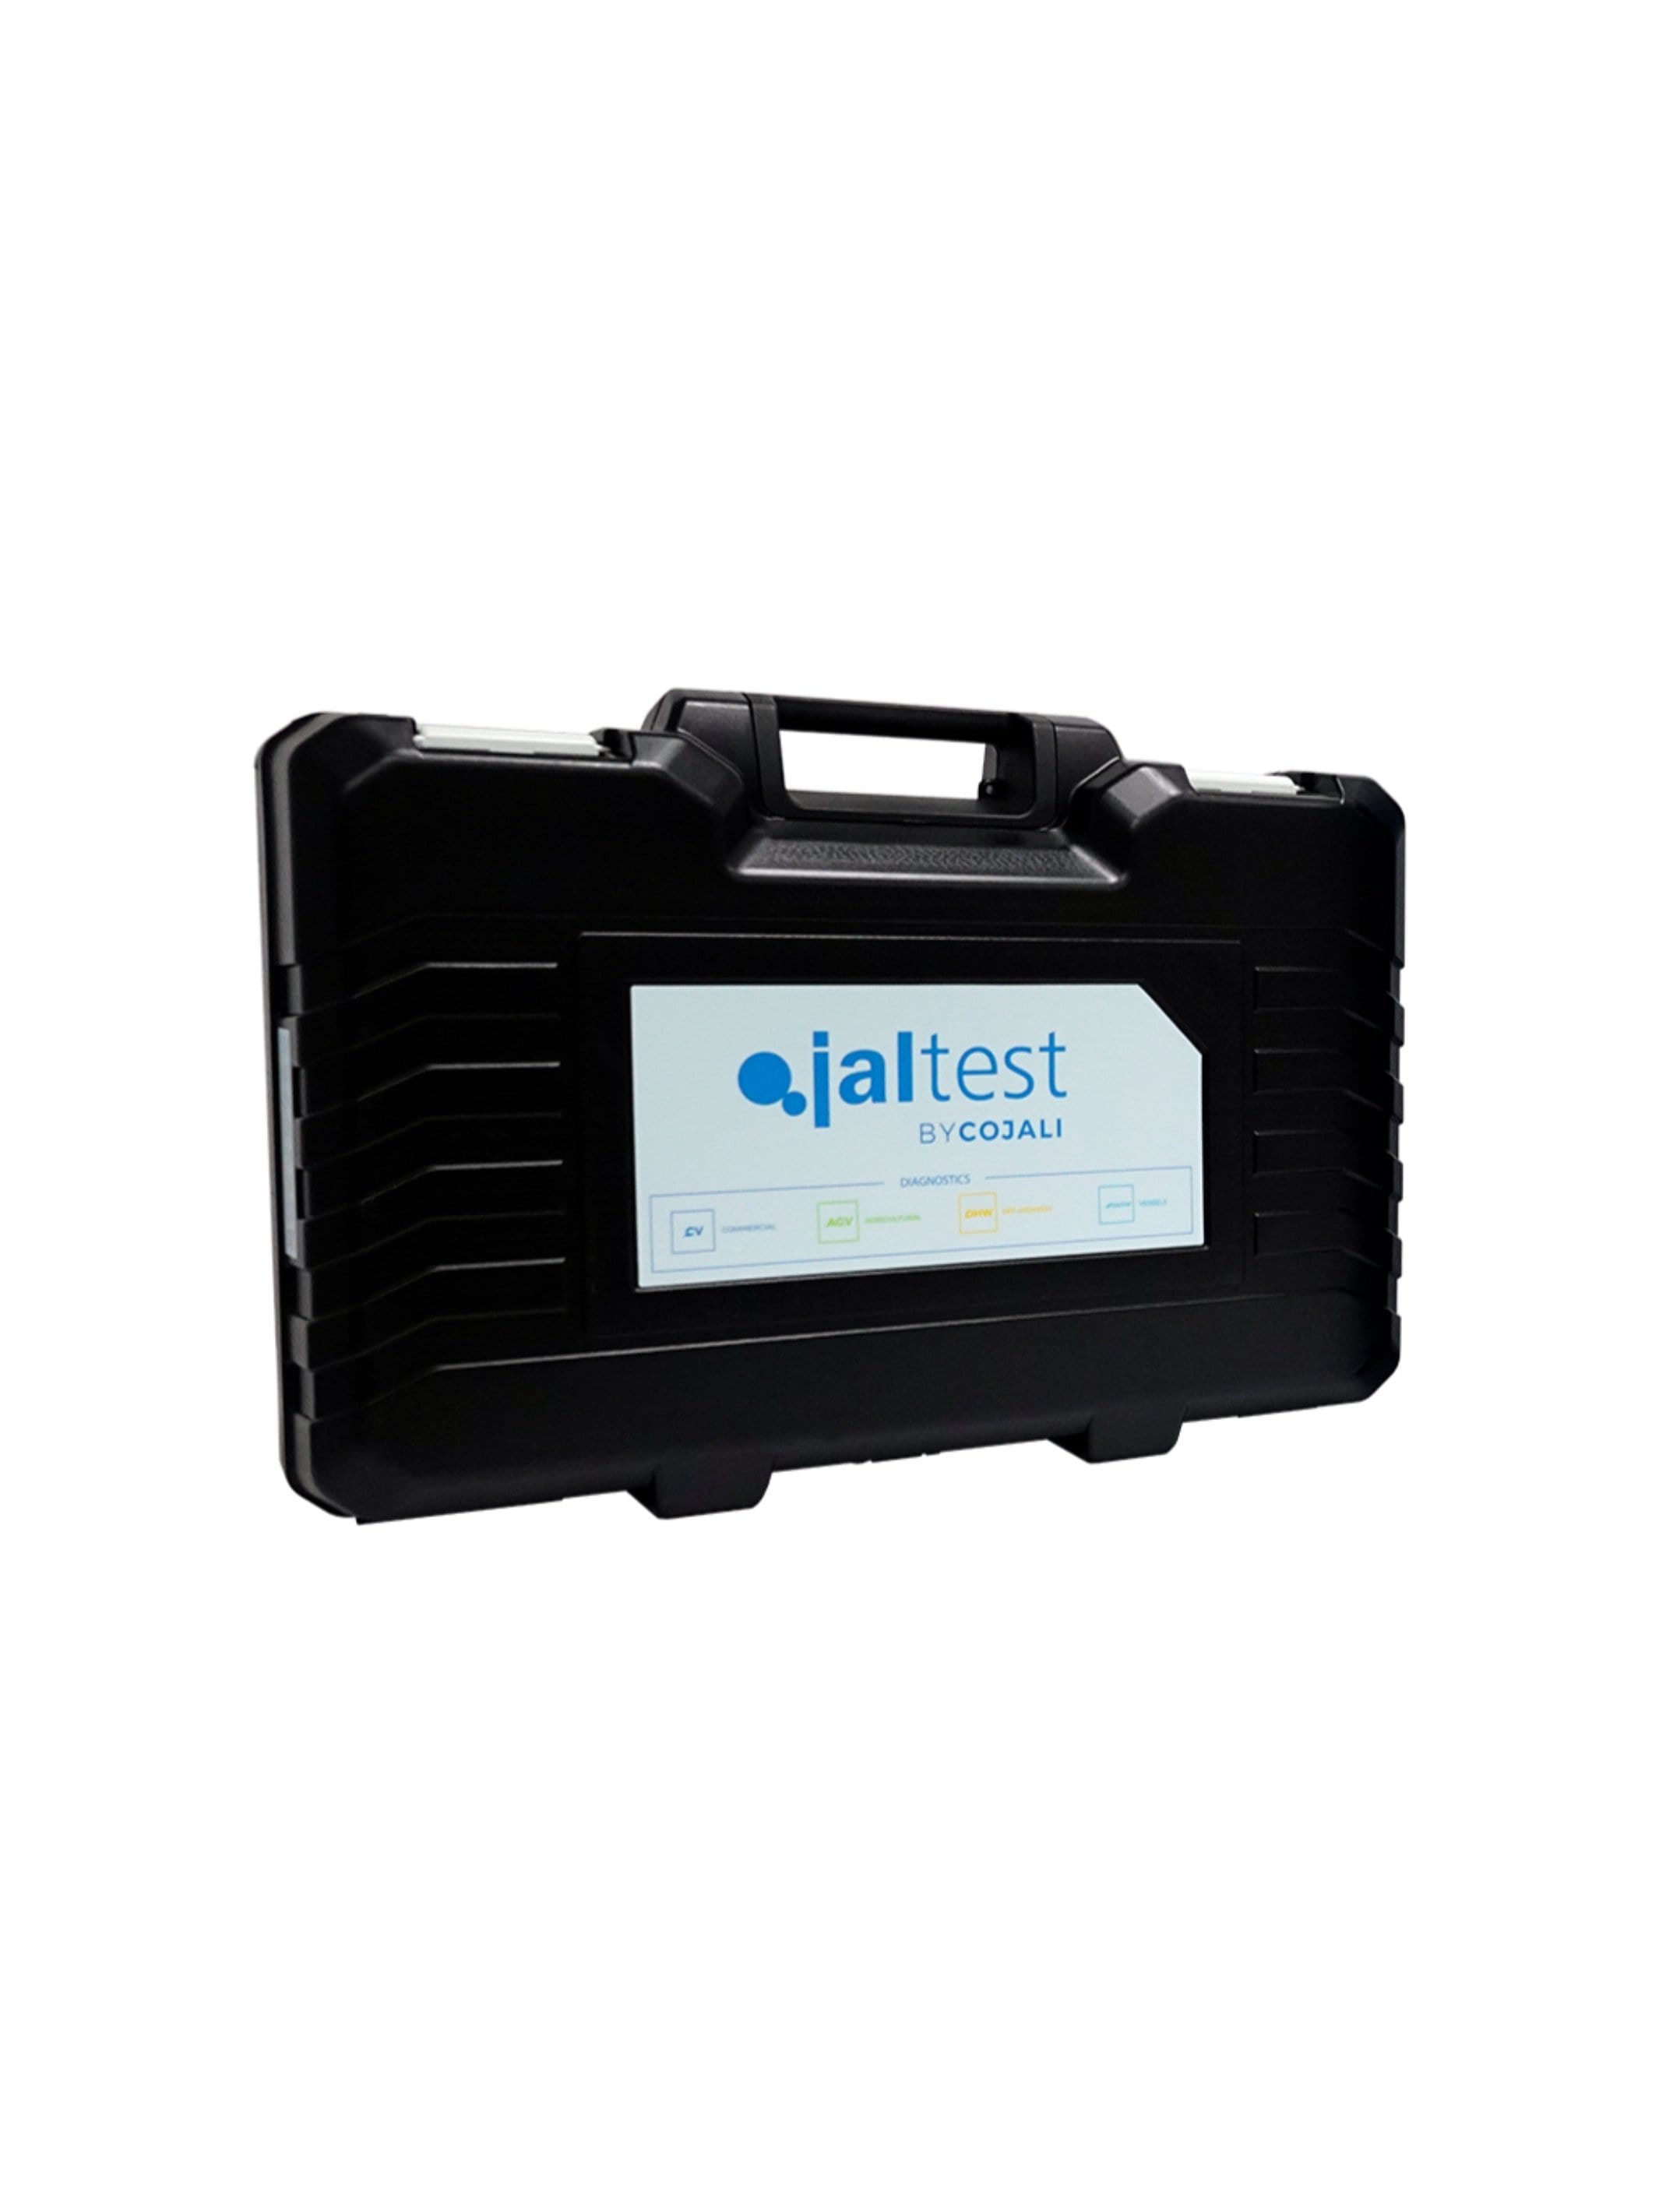 70003015 Transport Hardcase - Jaltest Marine Inboard Motor Diagnostic Tool Kit